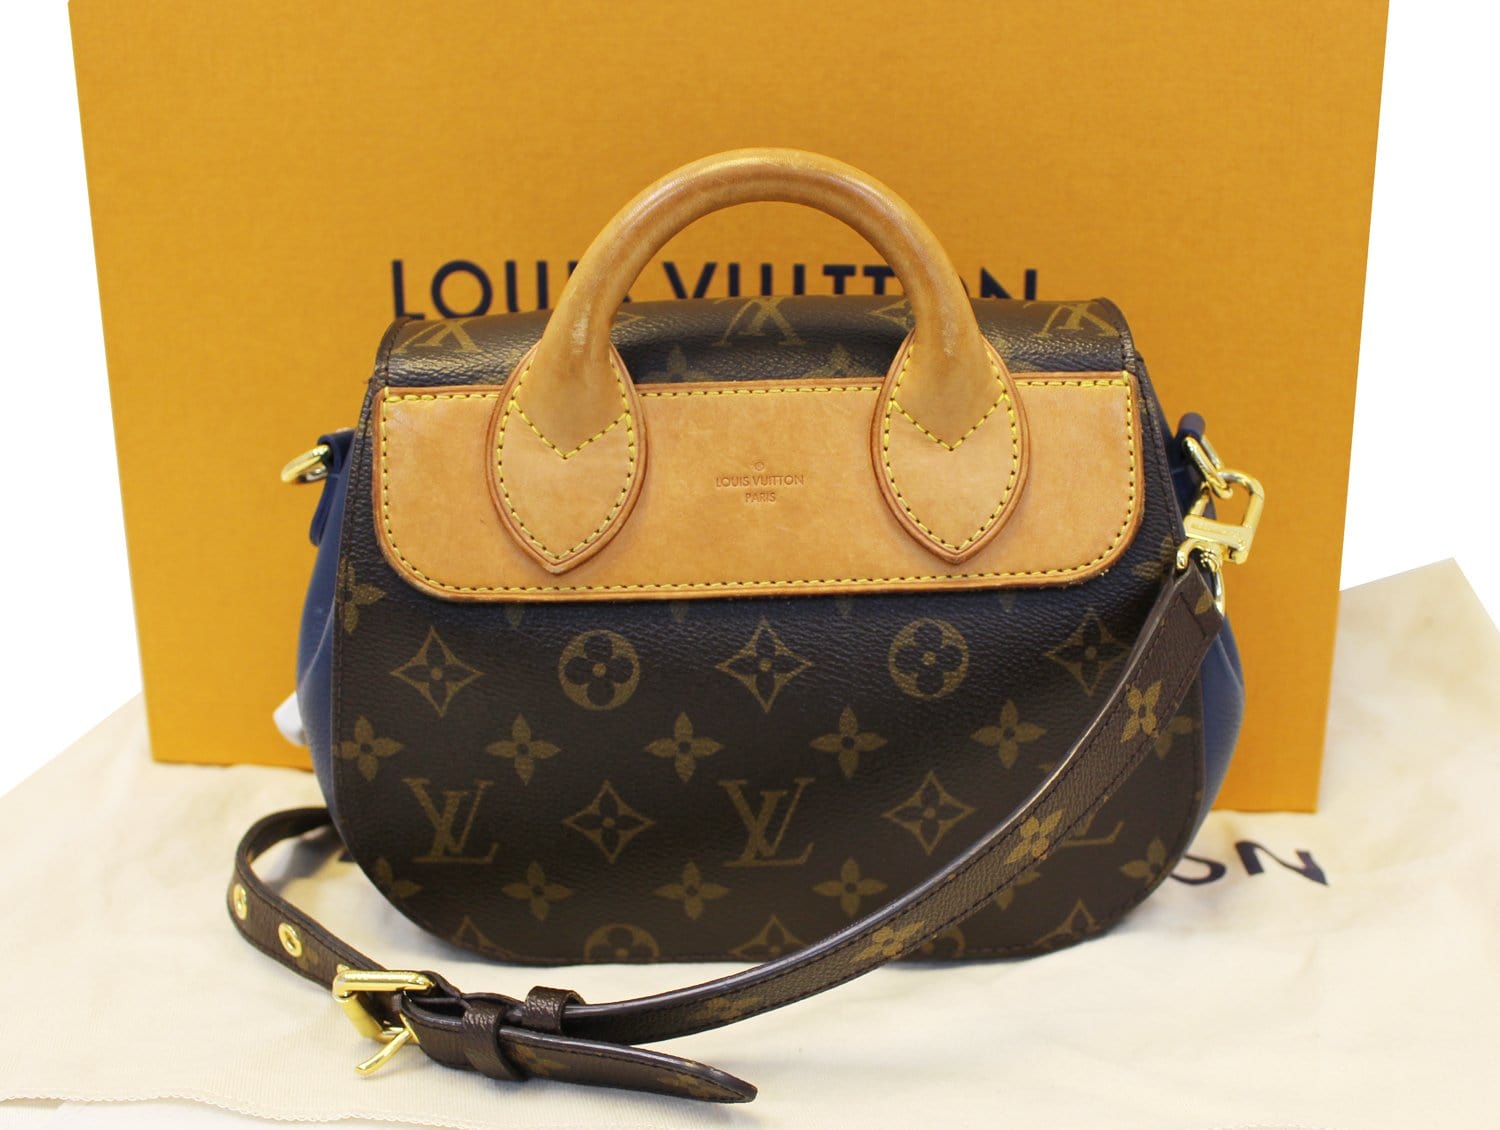 Louis Vuitton Monogram Canvas and Leather Eden PM Bag